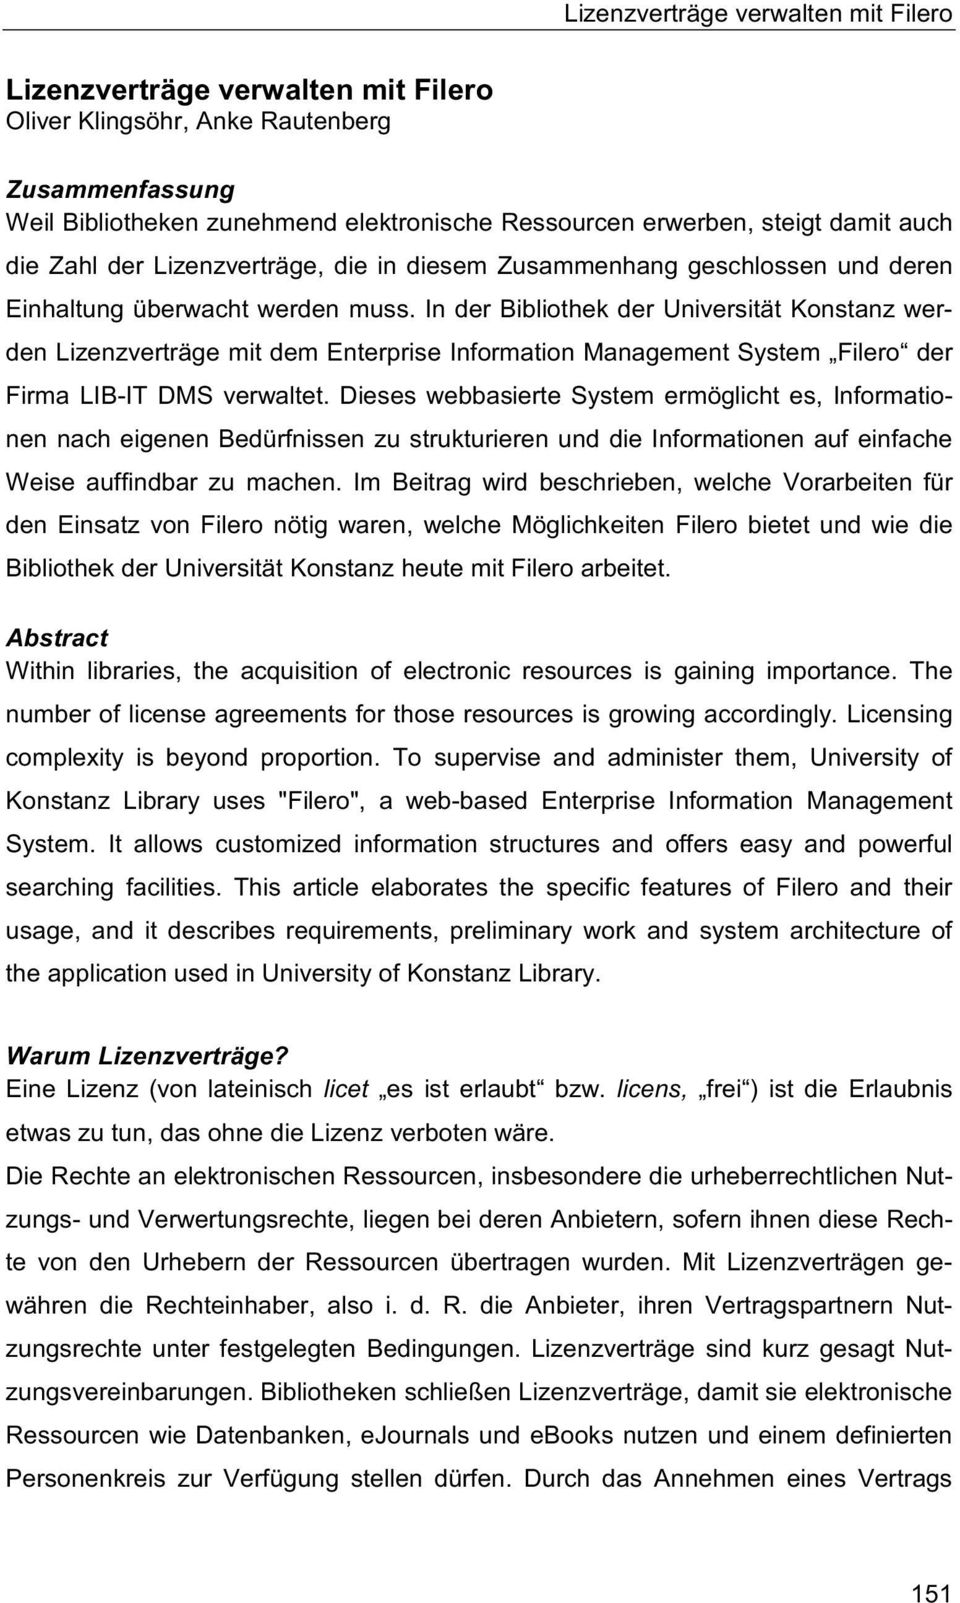 In der Bibliothek der Universität Konstanz werden Lizenzverträge mit dem Enterprise Information Management System Filero der Firma LIB-IT DMS verwaltet.